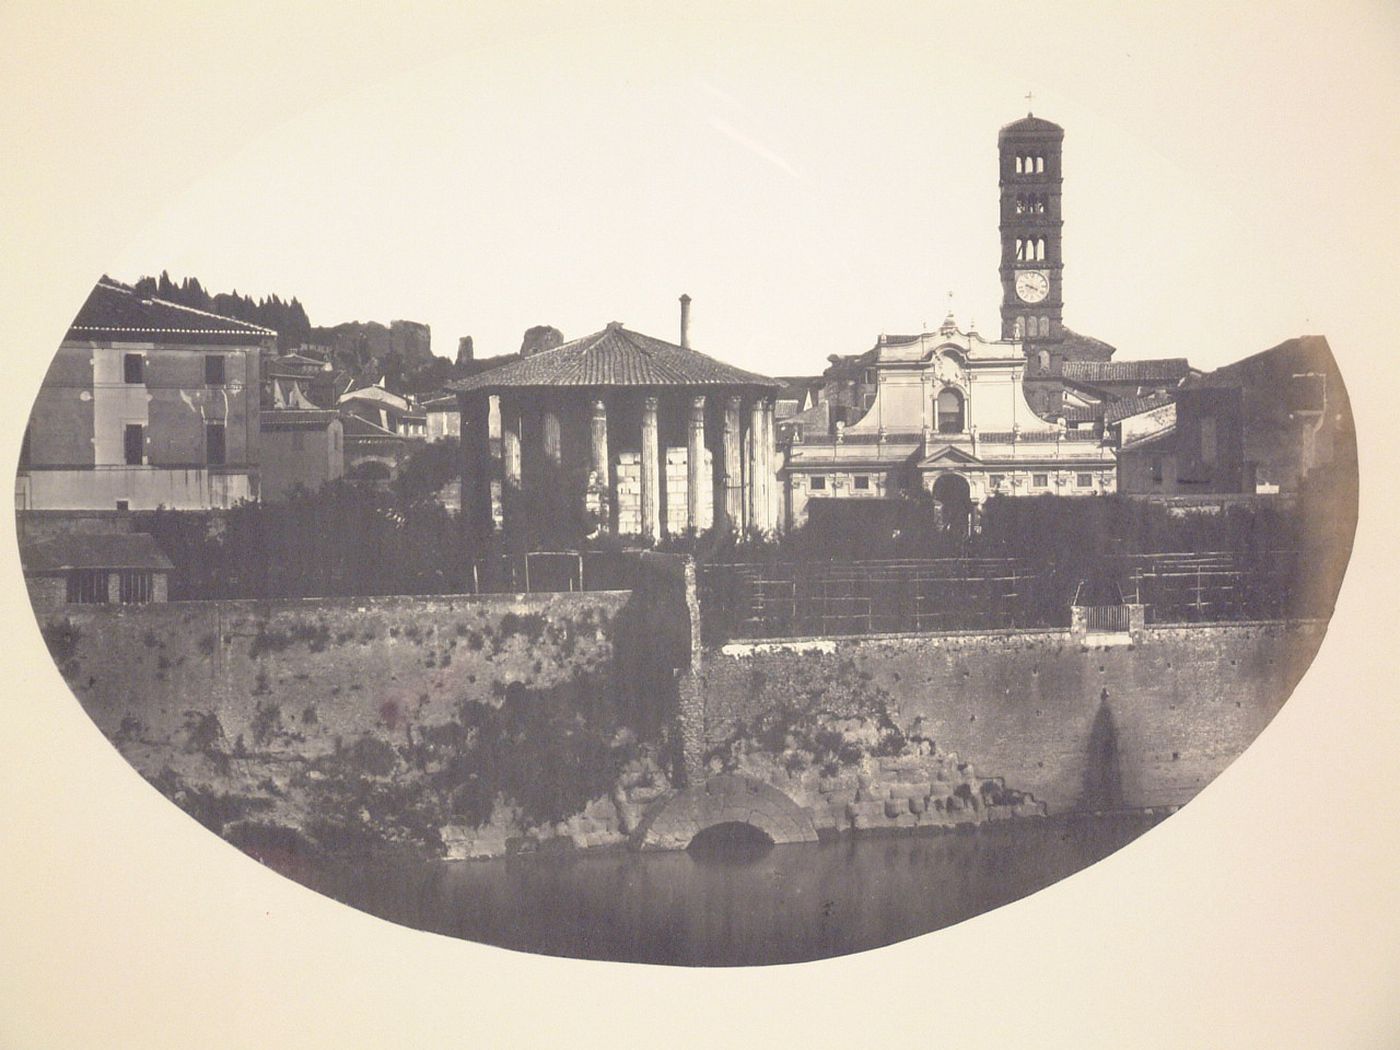 View of the Tempio di Vesta, the Church of Santa Maria in Cosmedin, and the Cloaca Maxima, Rome, Italy